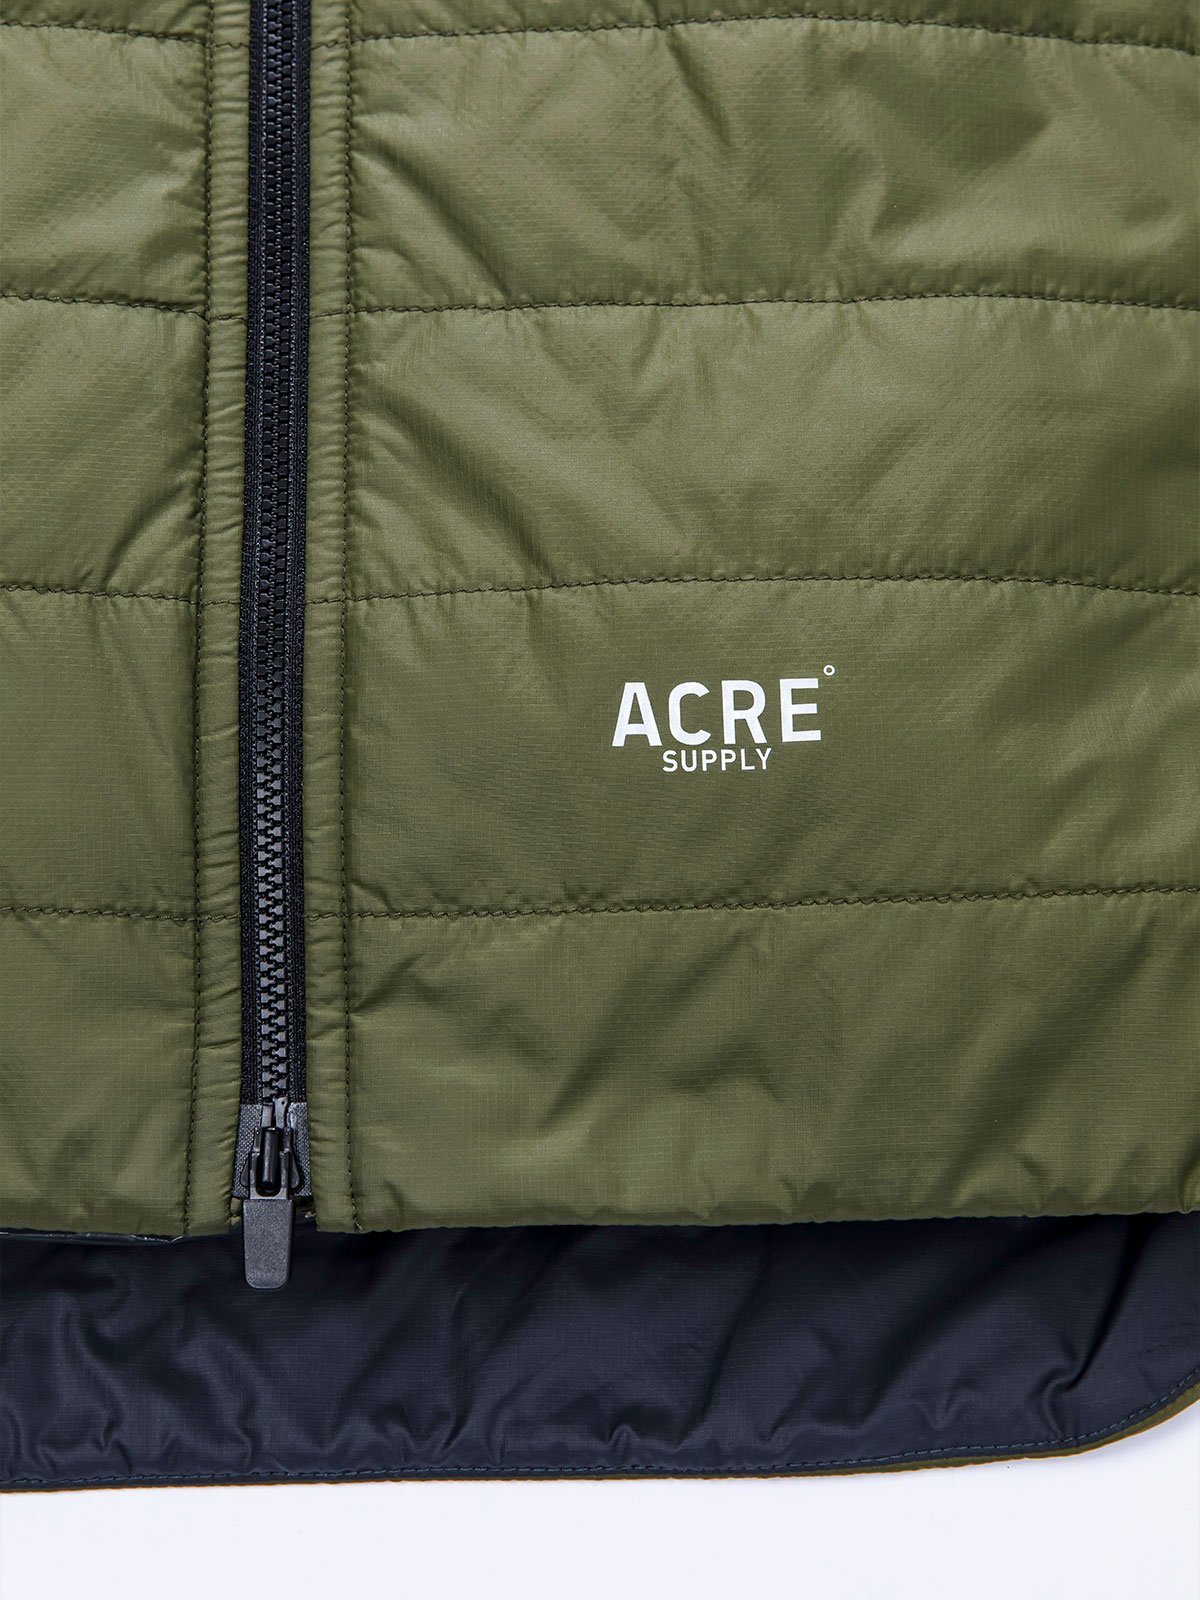 Acre Series Jacket van Mission Workshop - Weerbestendige tassen & technische kleding - San Francisco & Los Angeles - Gemaakt om te weerstaan - Voor altijd gegarandeerd